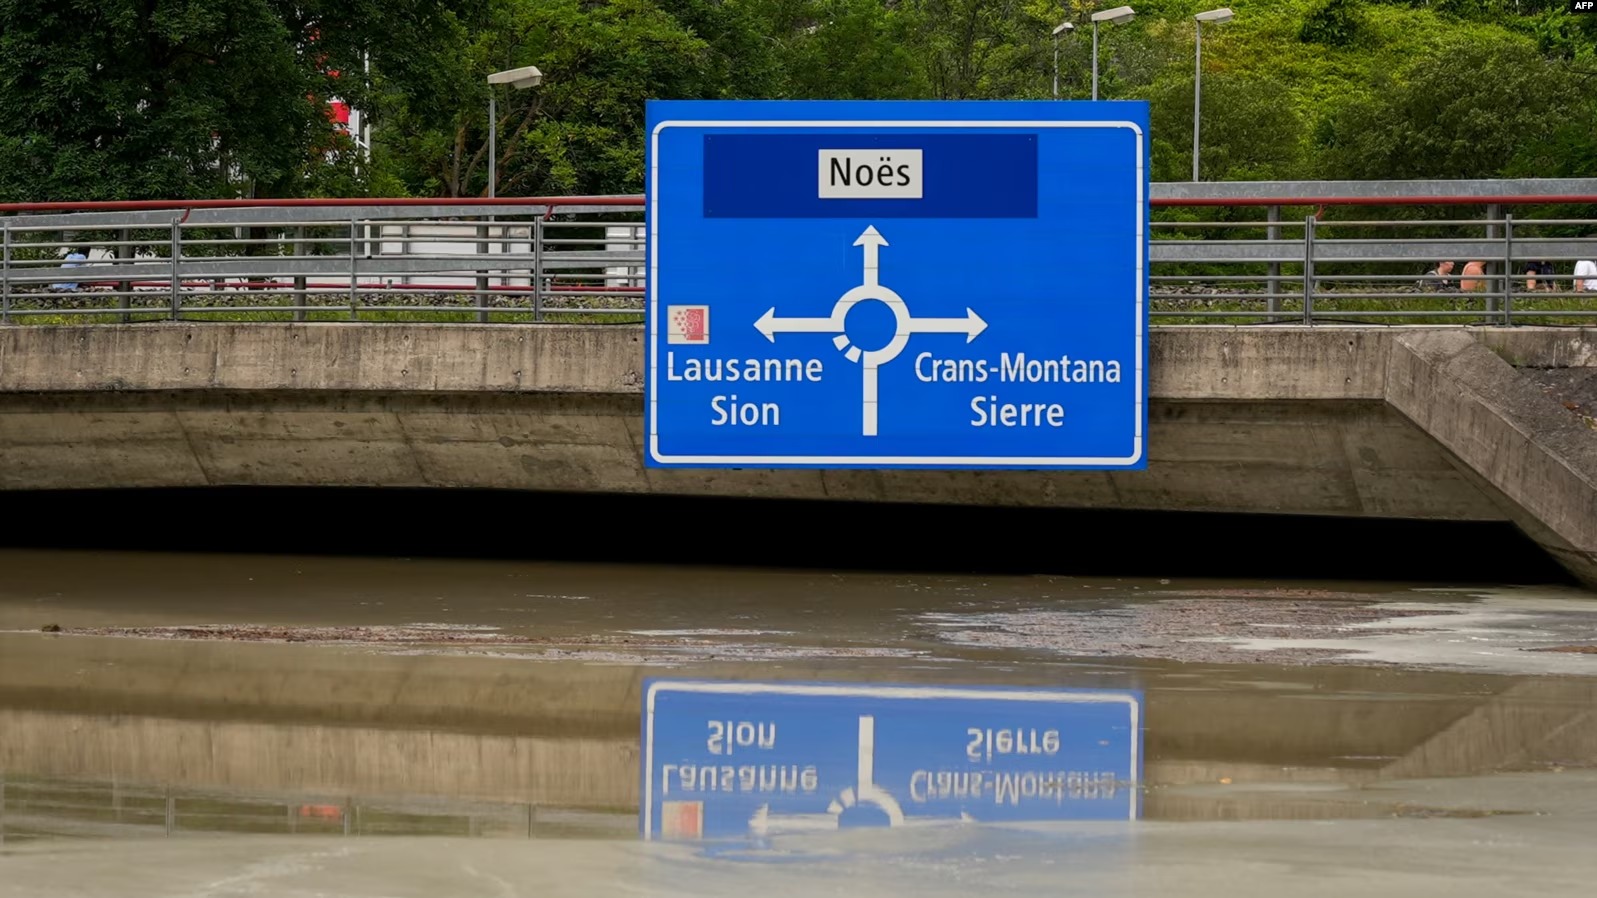 Stuhitë e fuqishme dhe shirat e rrëmbyeshëm shkaktojnë viktima në Francë dhe Zvicër, raportohet për pesë persona të vdekur